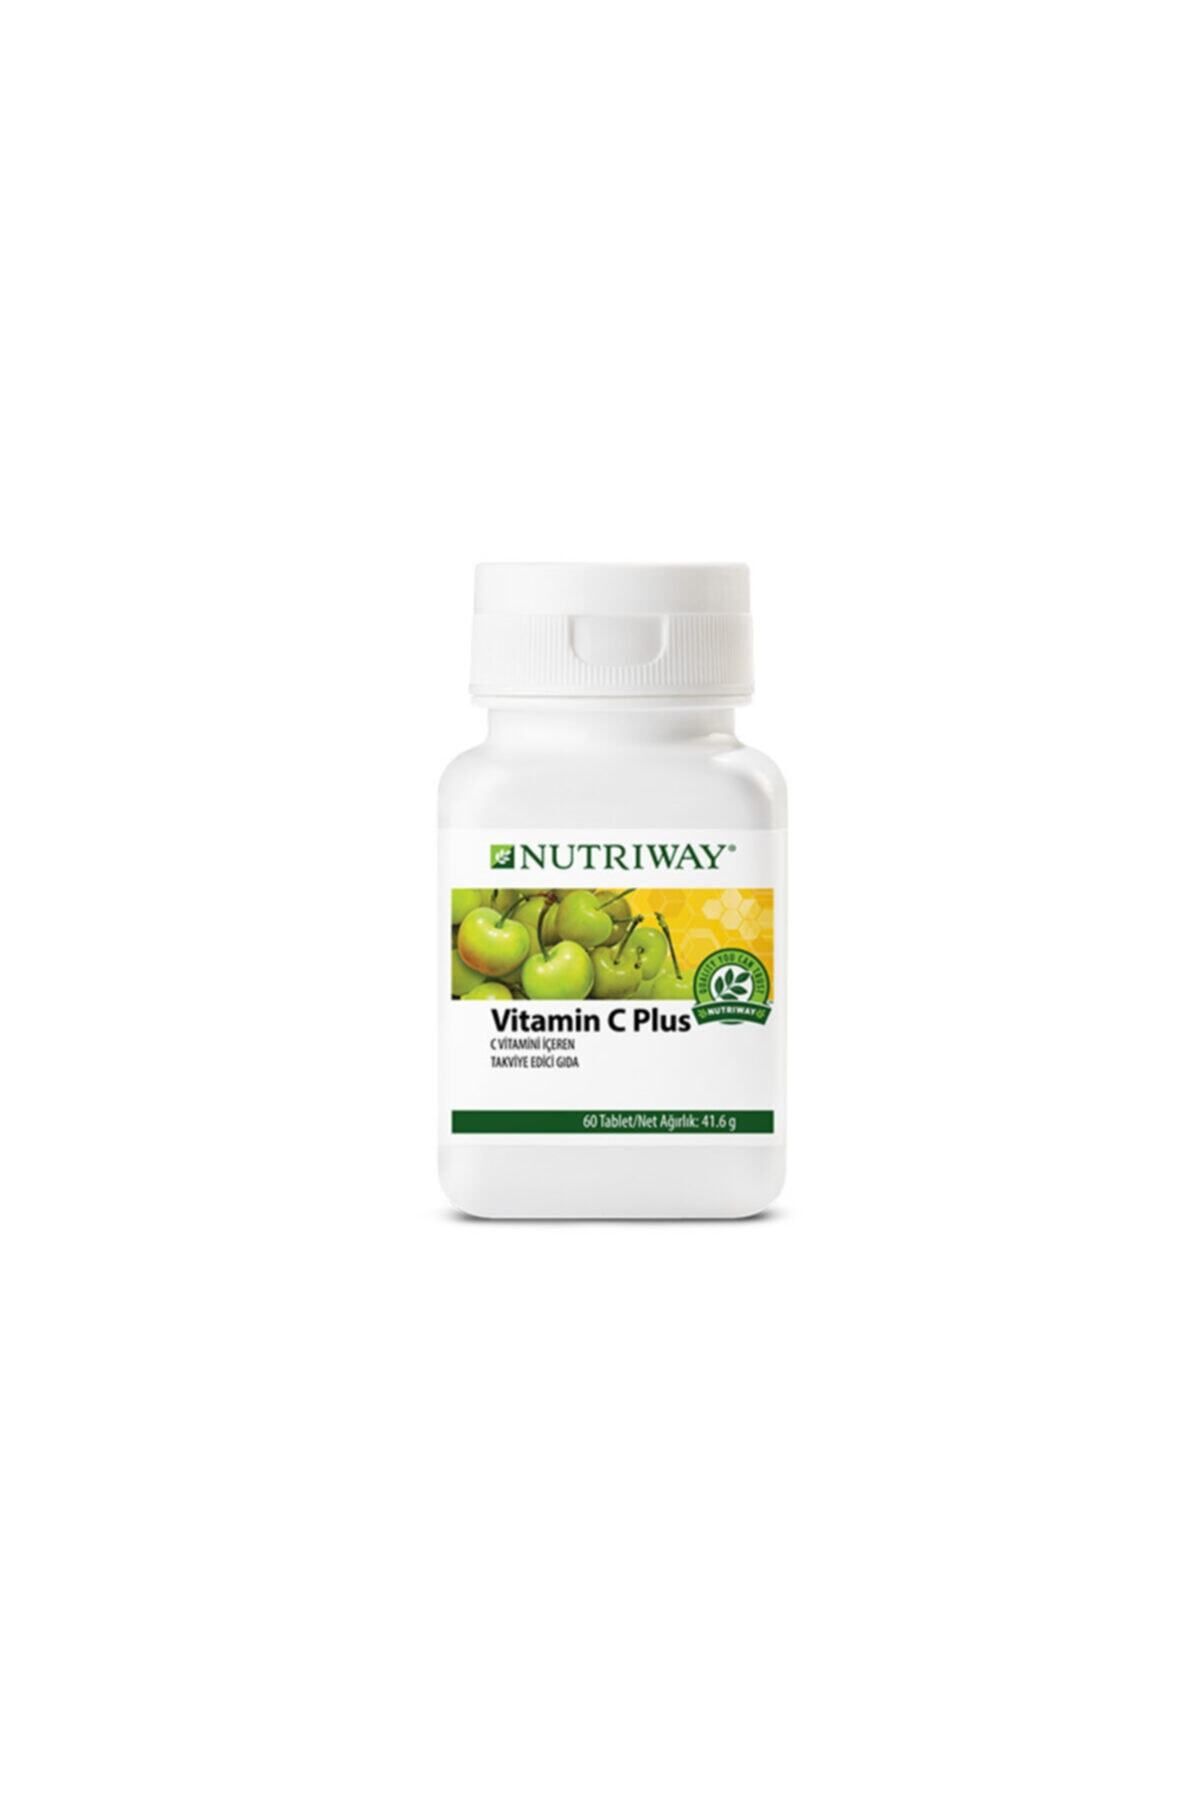 Nutriway Amway Vitamin C Plus Nutrıway 60 Tablet